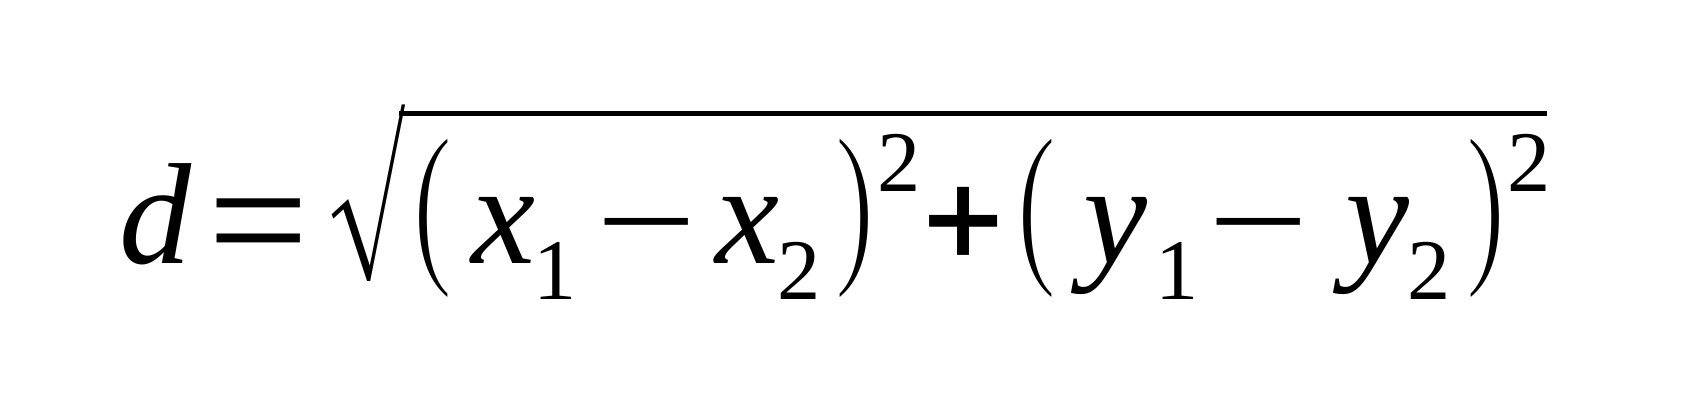 Formeln fr avstndet mellan tv punkter